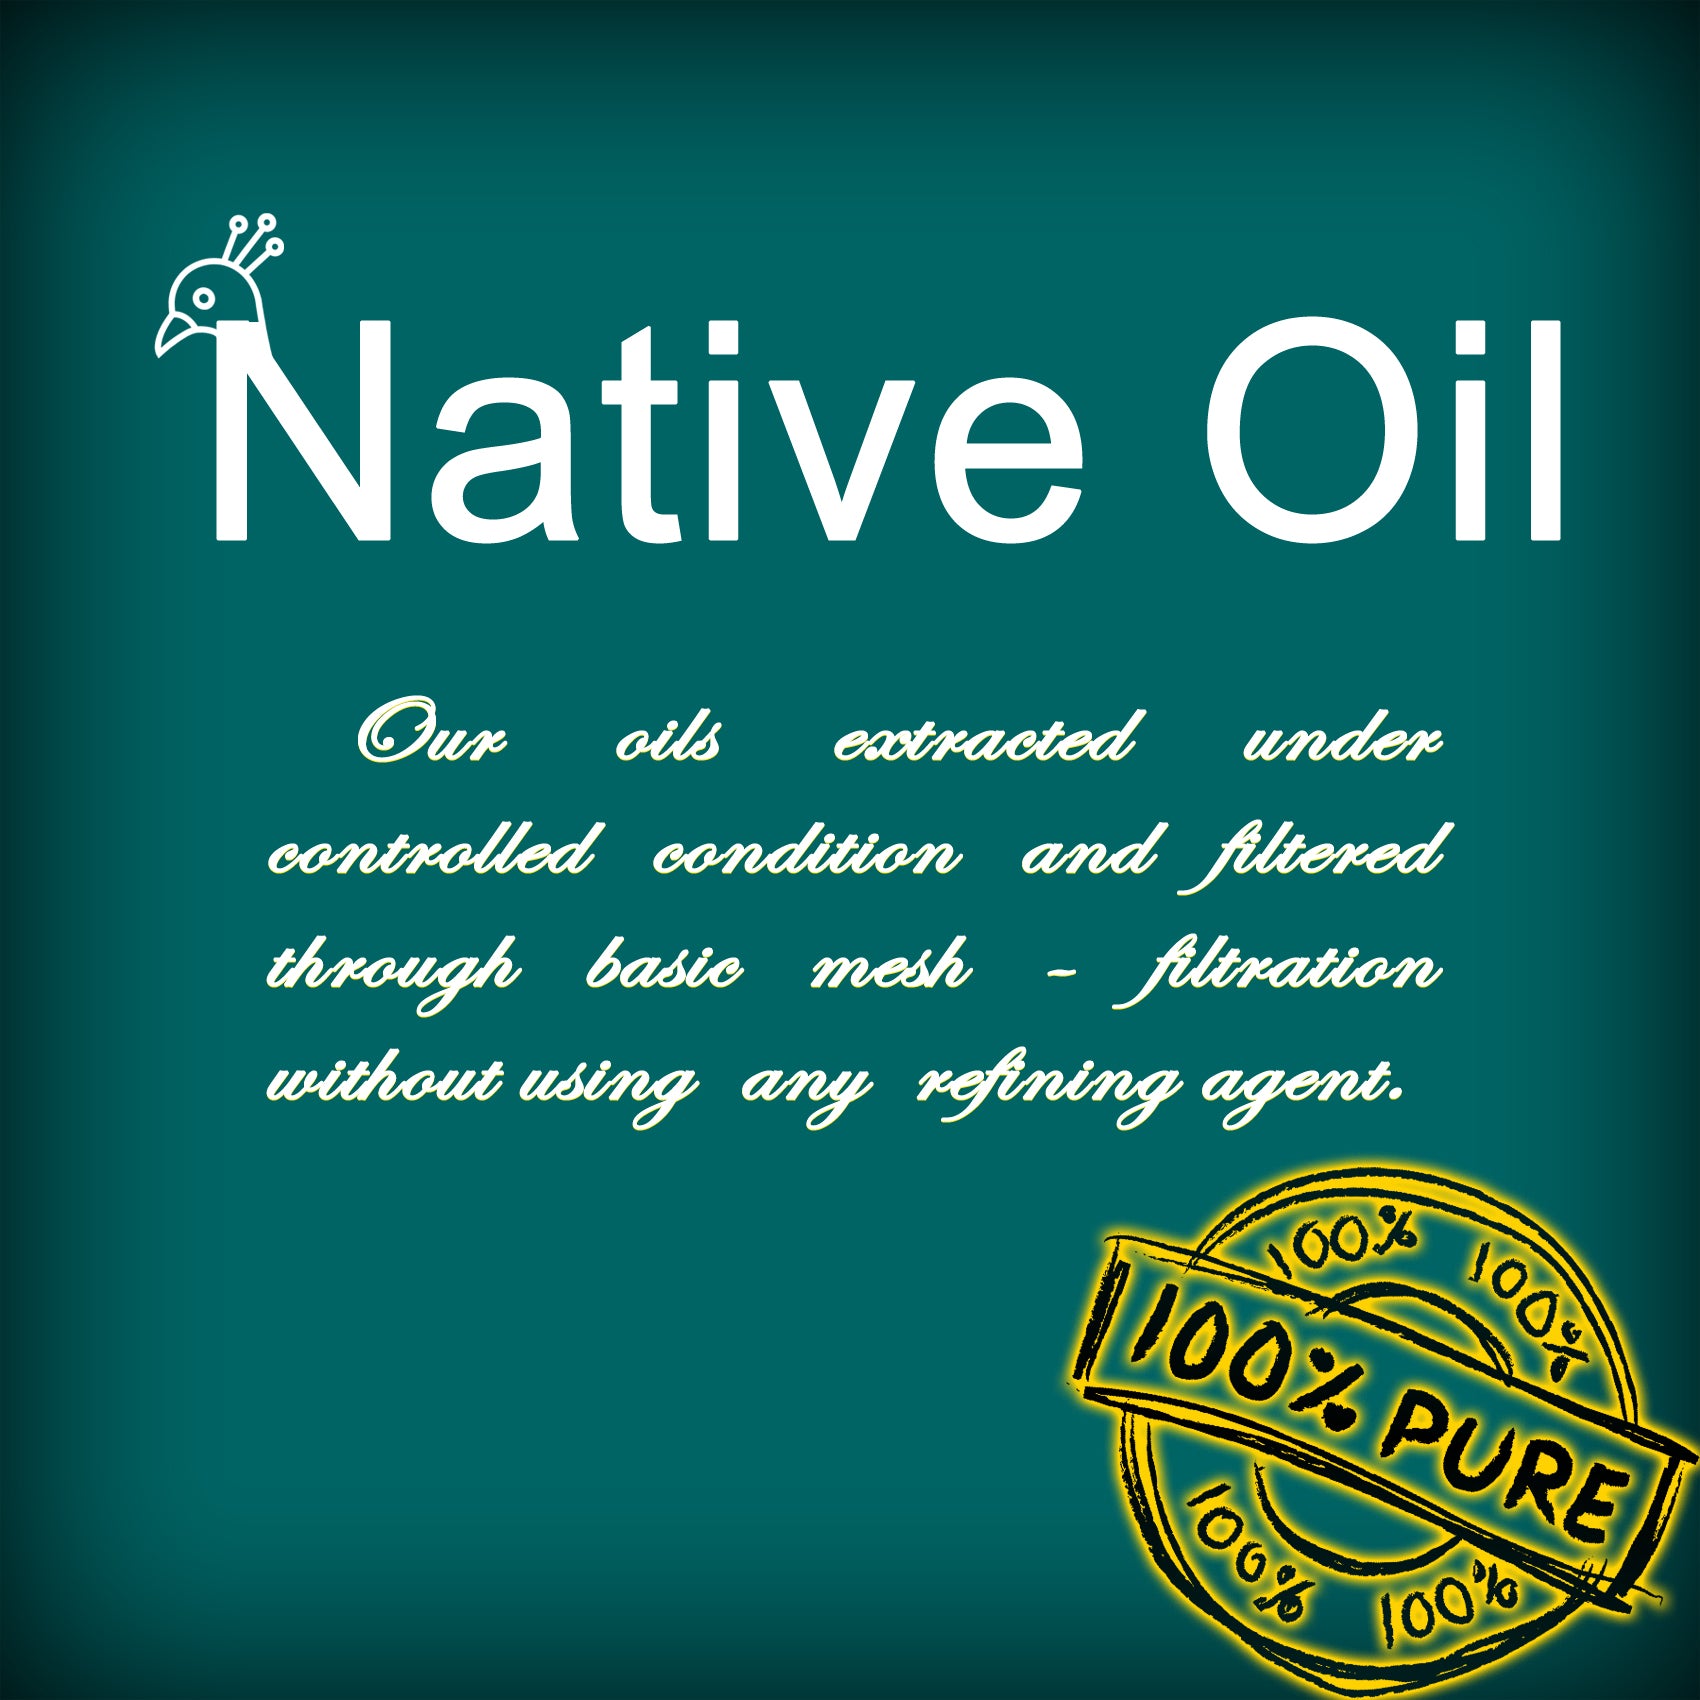 Native oil– Nativeoil